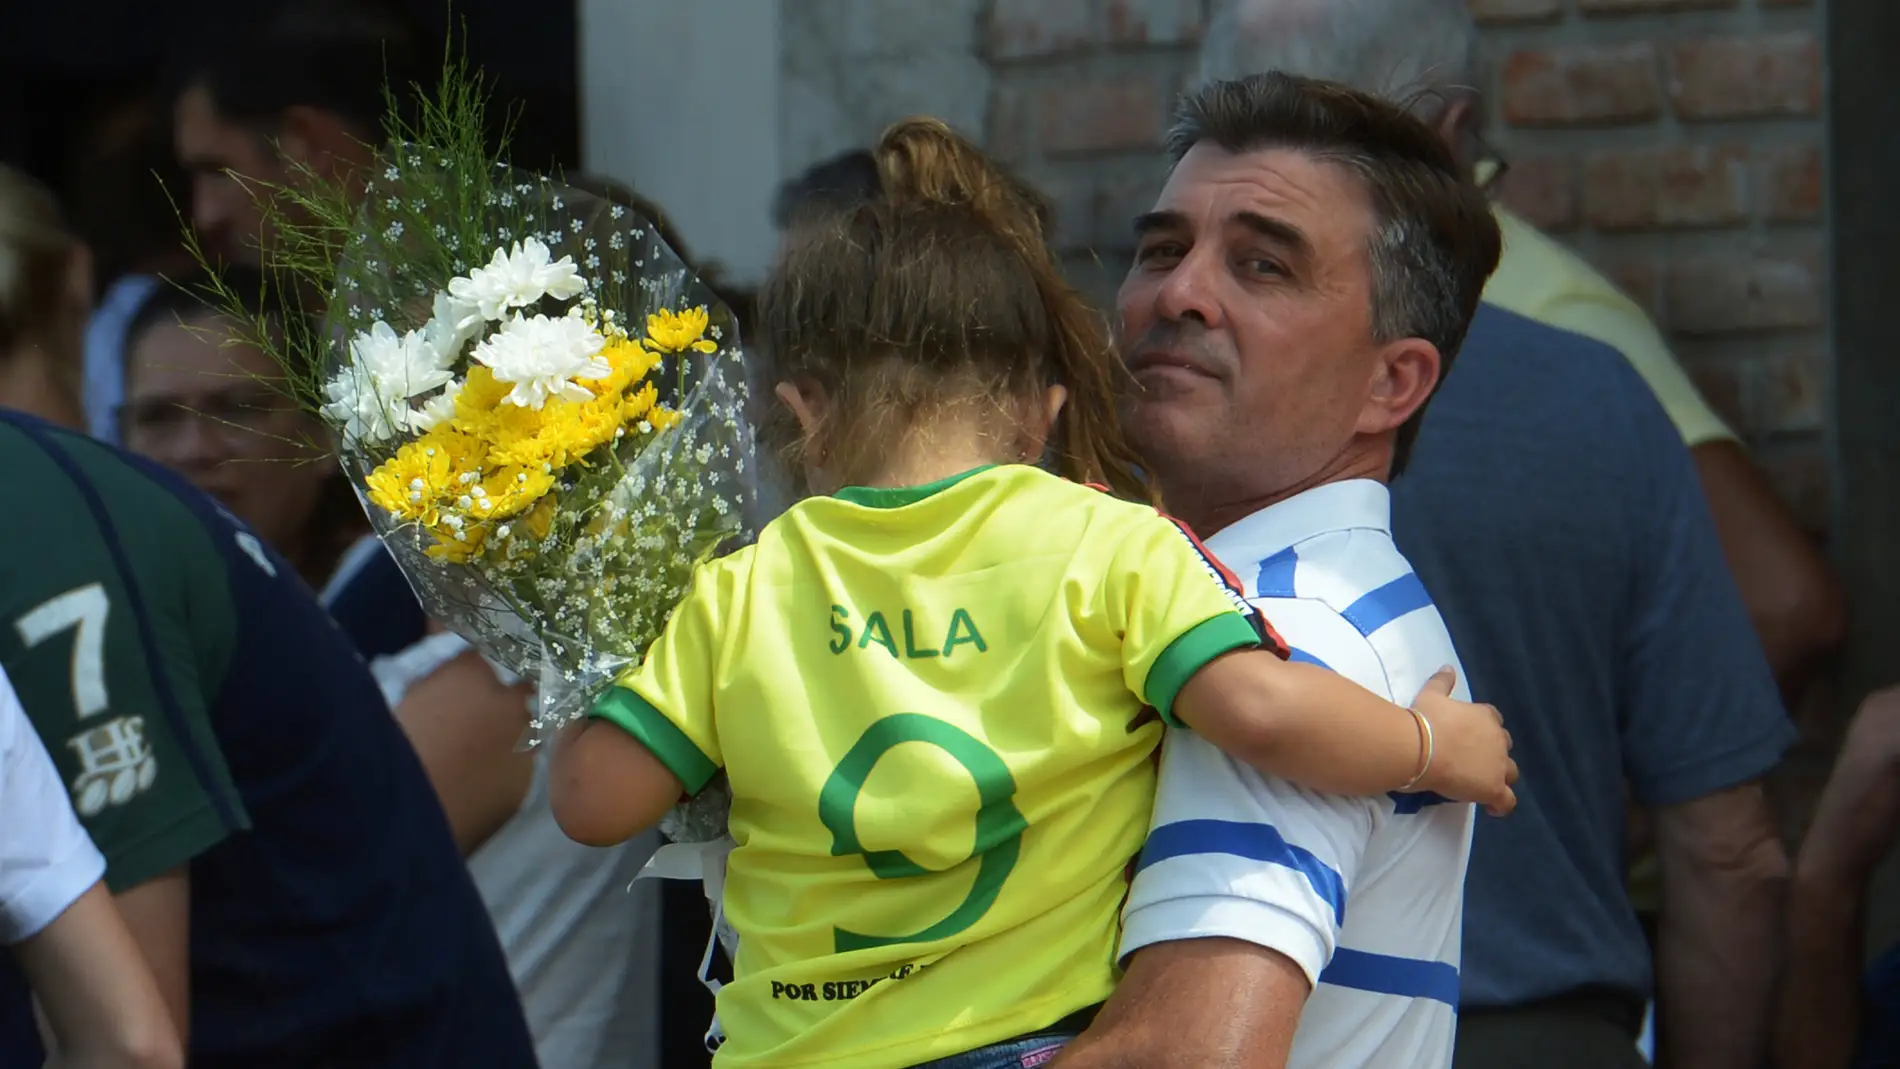 Una niña, con la camiseta de Emiliano Sala en el funeral del argentino